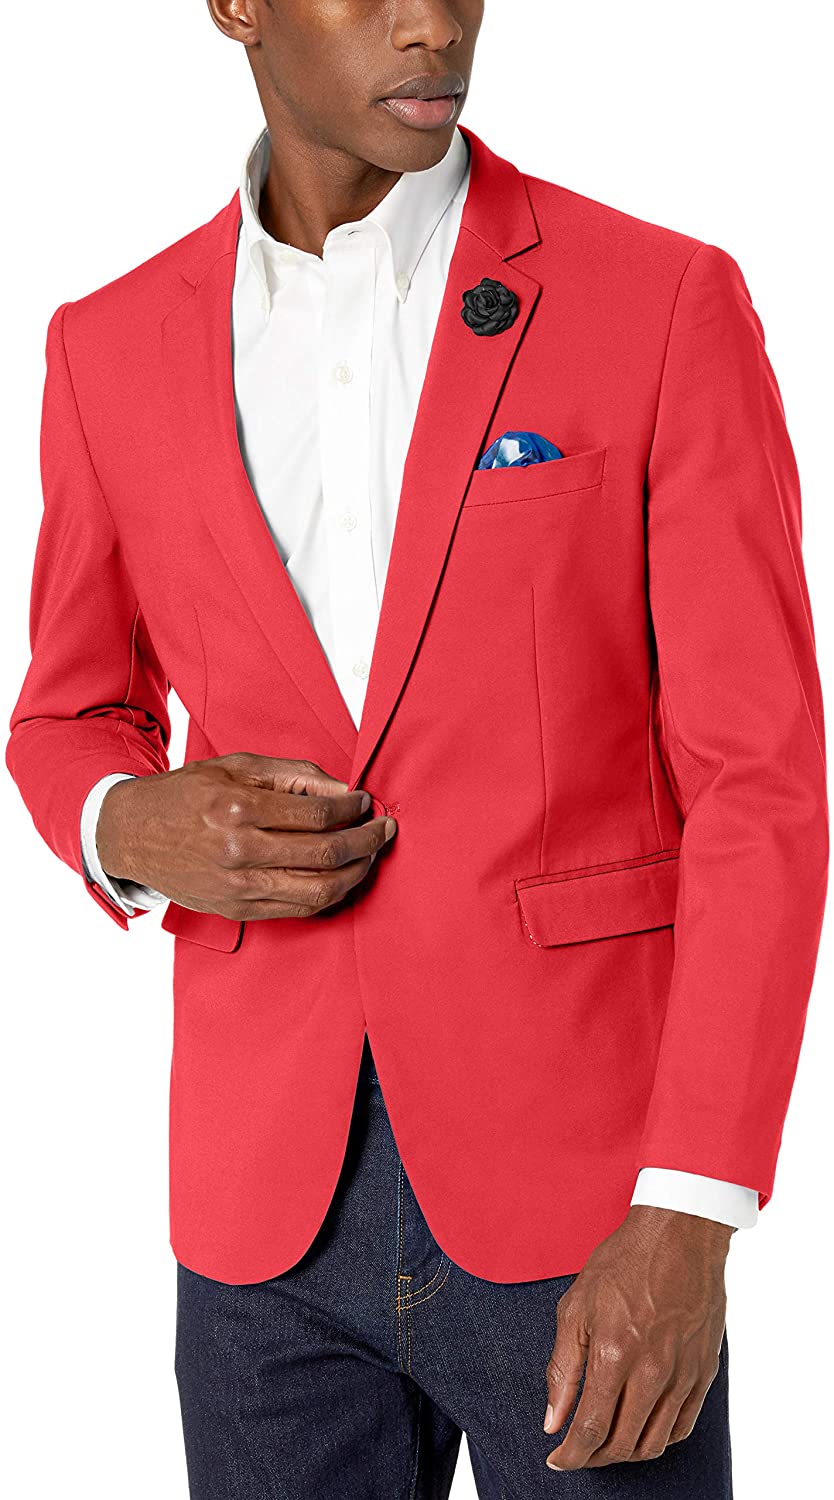 Saoye Fashion Slim Fit Sporty Mens Tweed A Spina di Pesce per Il Giovane Tempo Libero Uomo Giacche Casual Suit Blazer Blazer Slim Fit Uomo 